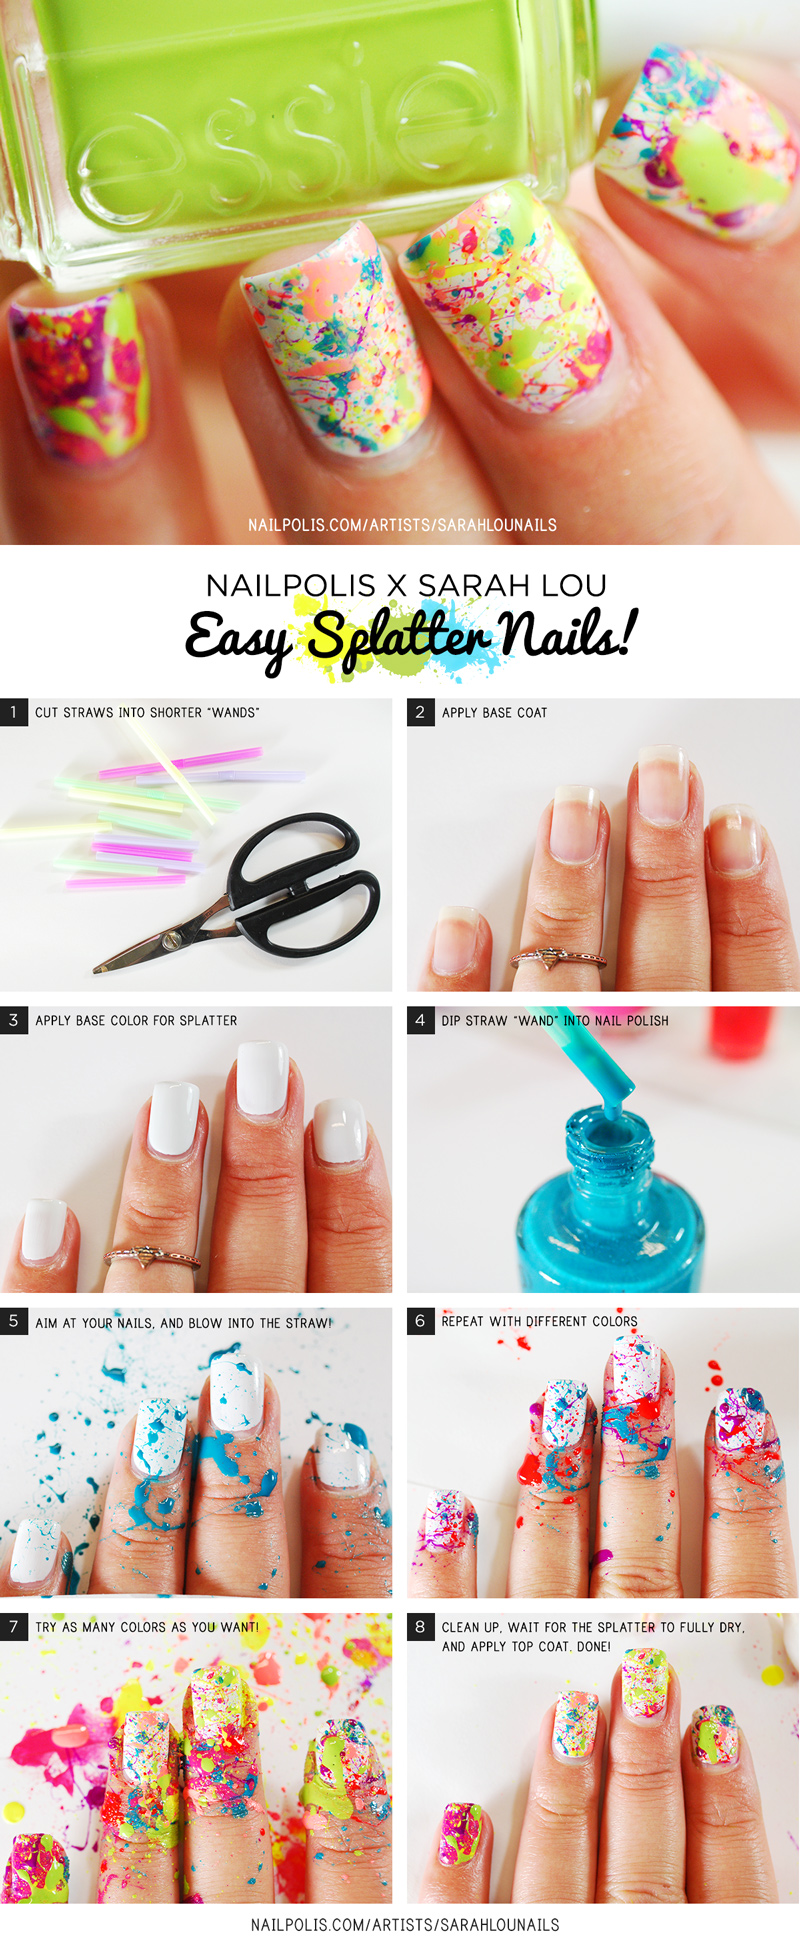 Splatter Nail Art Designs & How To Do Splatter Nails